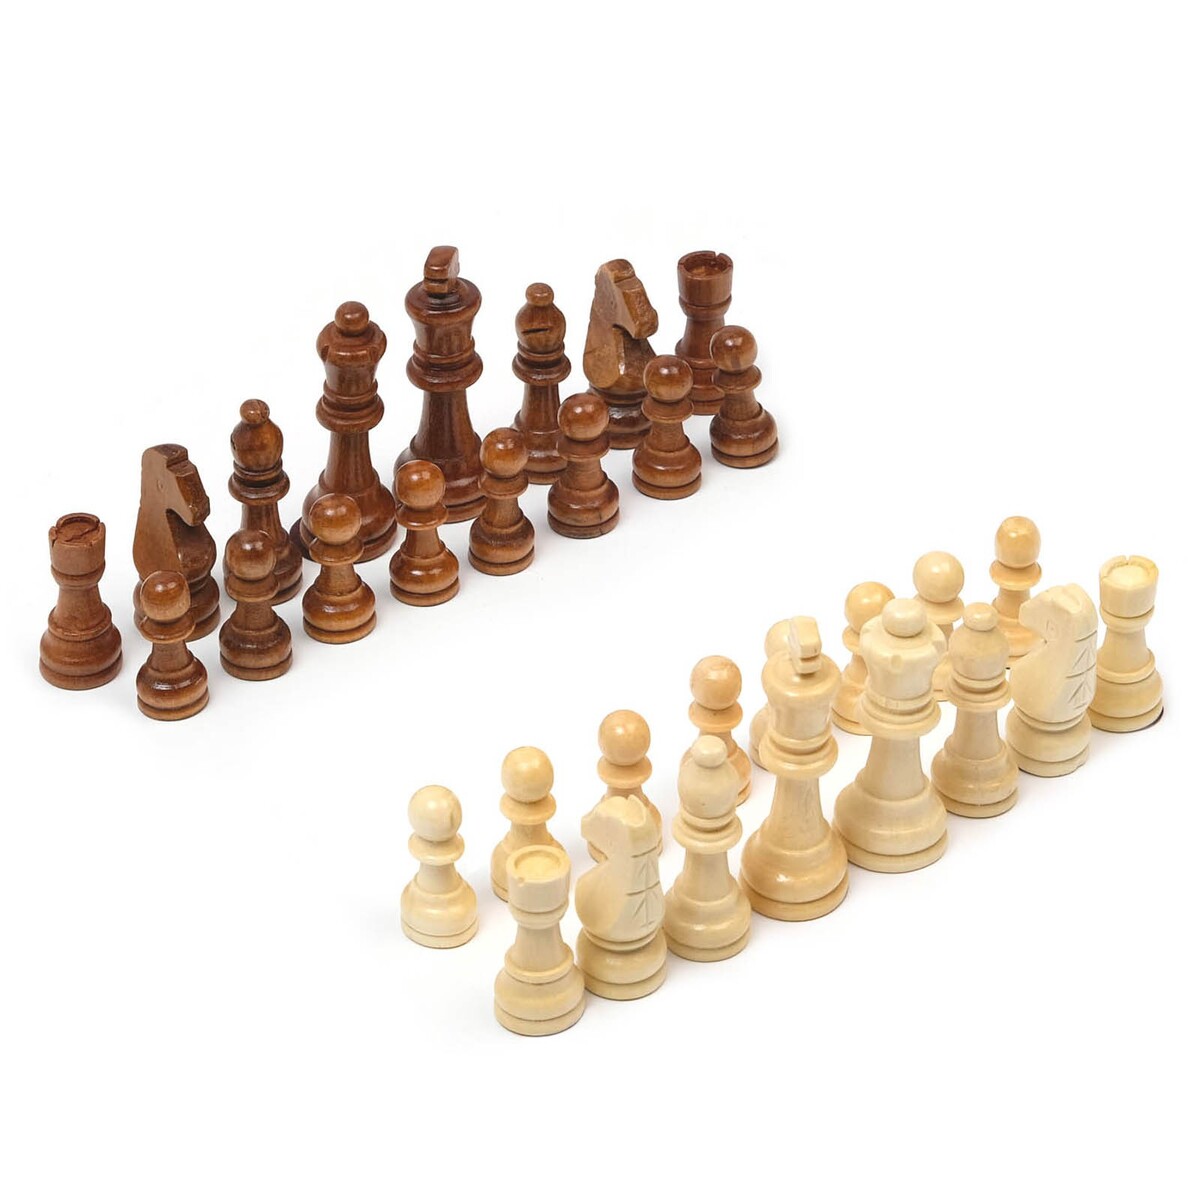 Шахматные фигуры, король h-9 см, пешка h-4 см шахматные фигуры гроссмейстерские